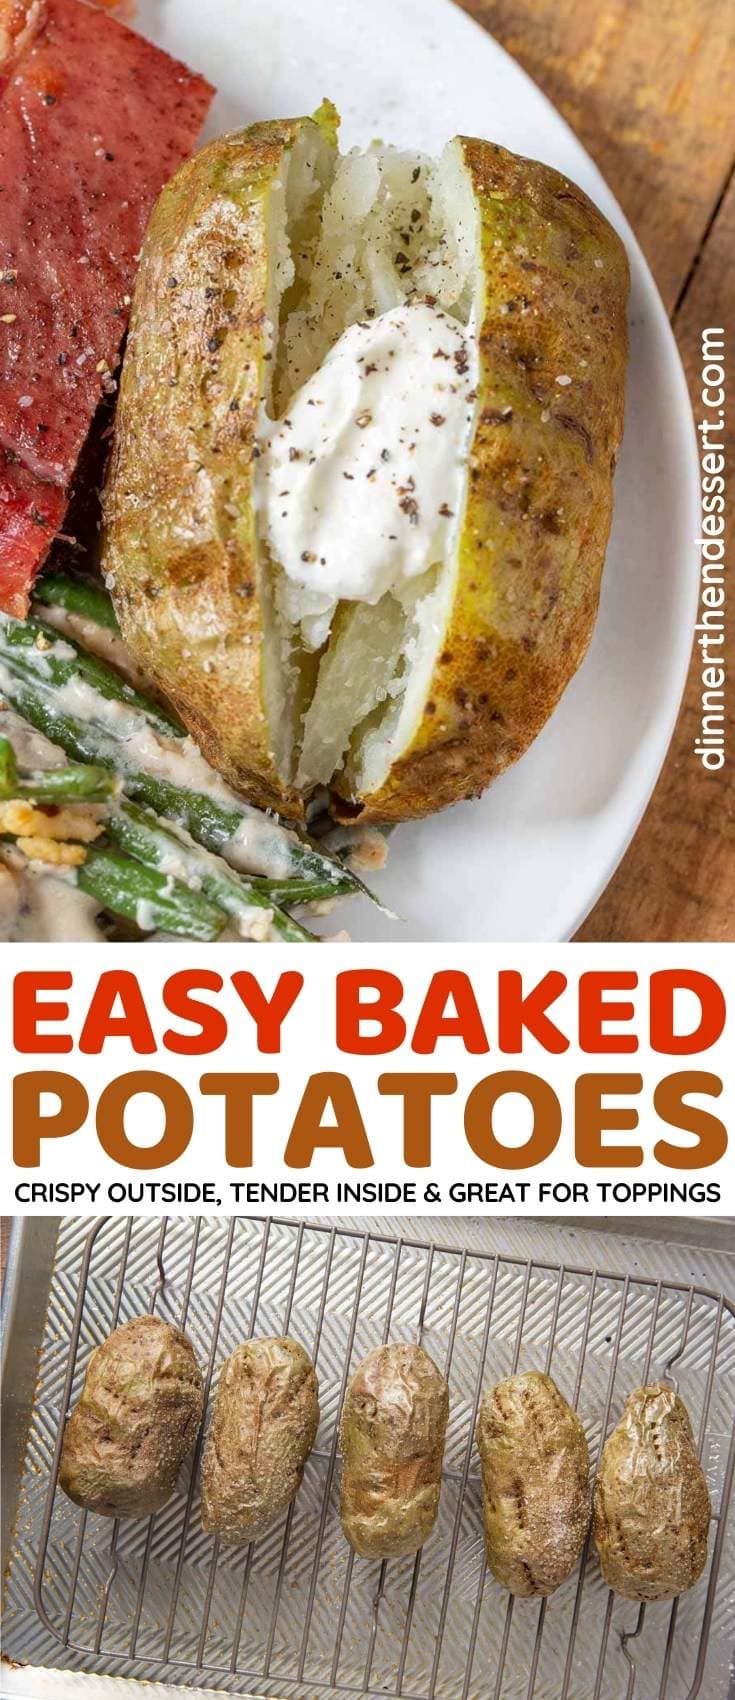 https://dinnerthendessert.com/wp-content/uploads/2020/09/Easy-Baked-Potatoes-L.jpg